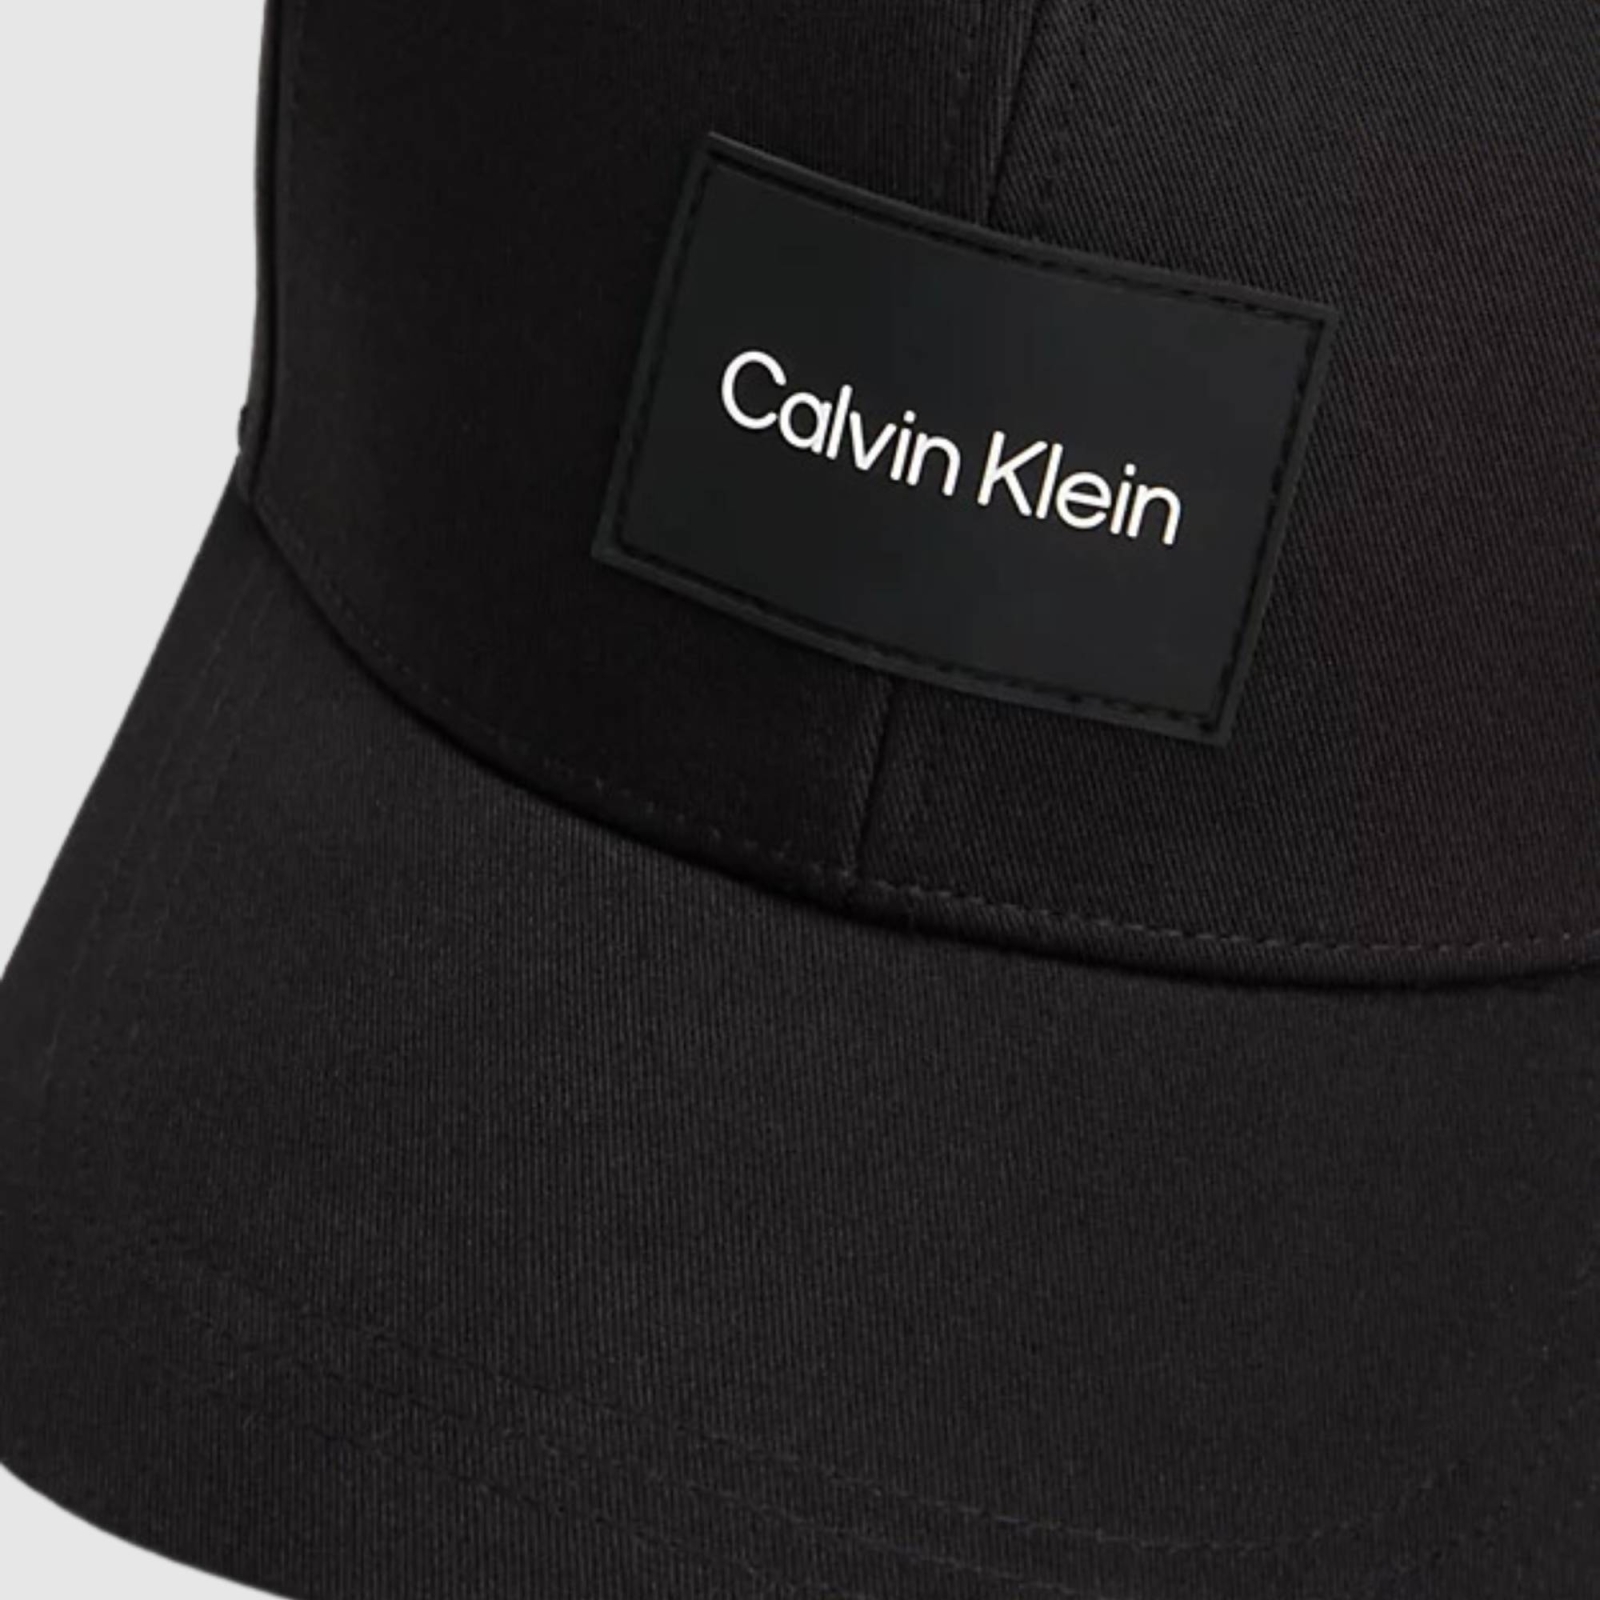 CALVIN KLEIN CAP